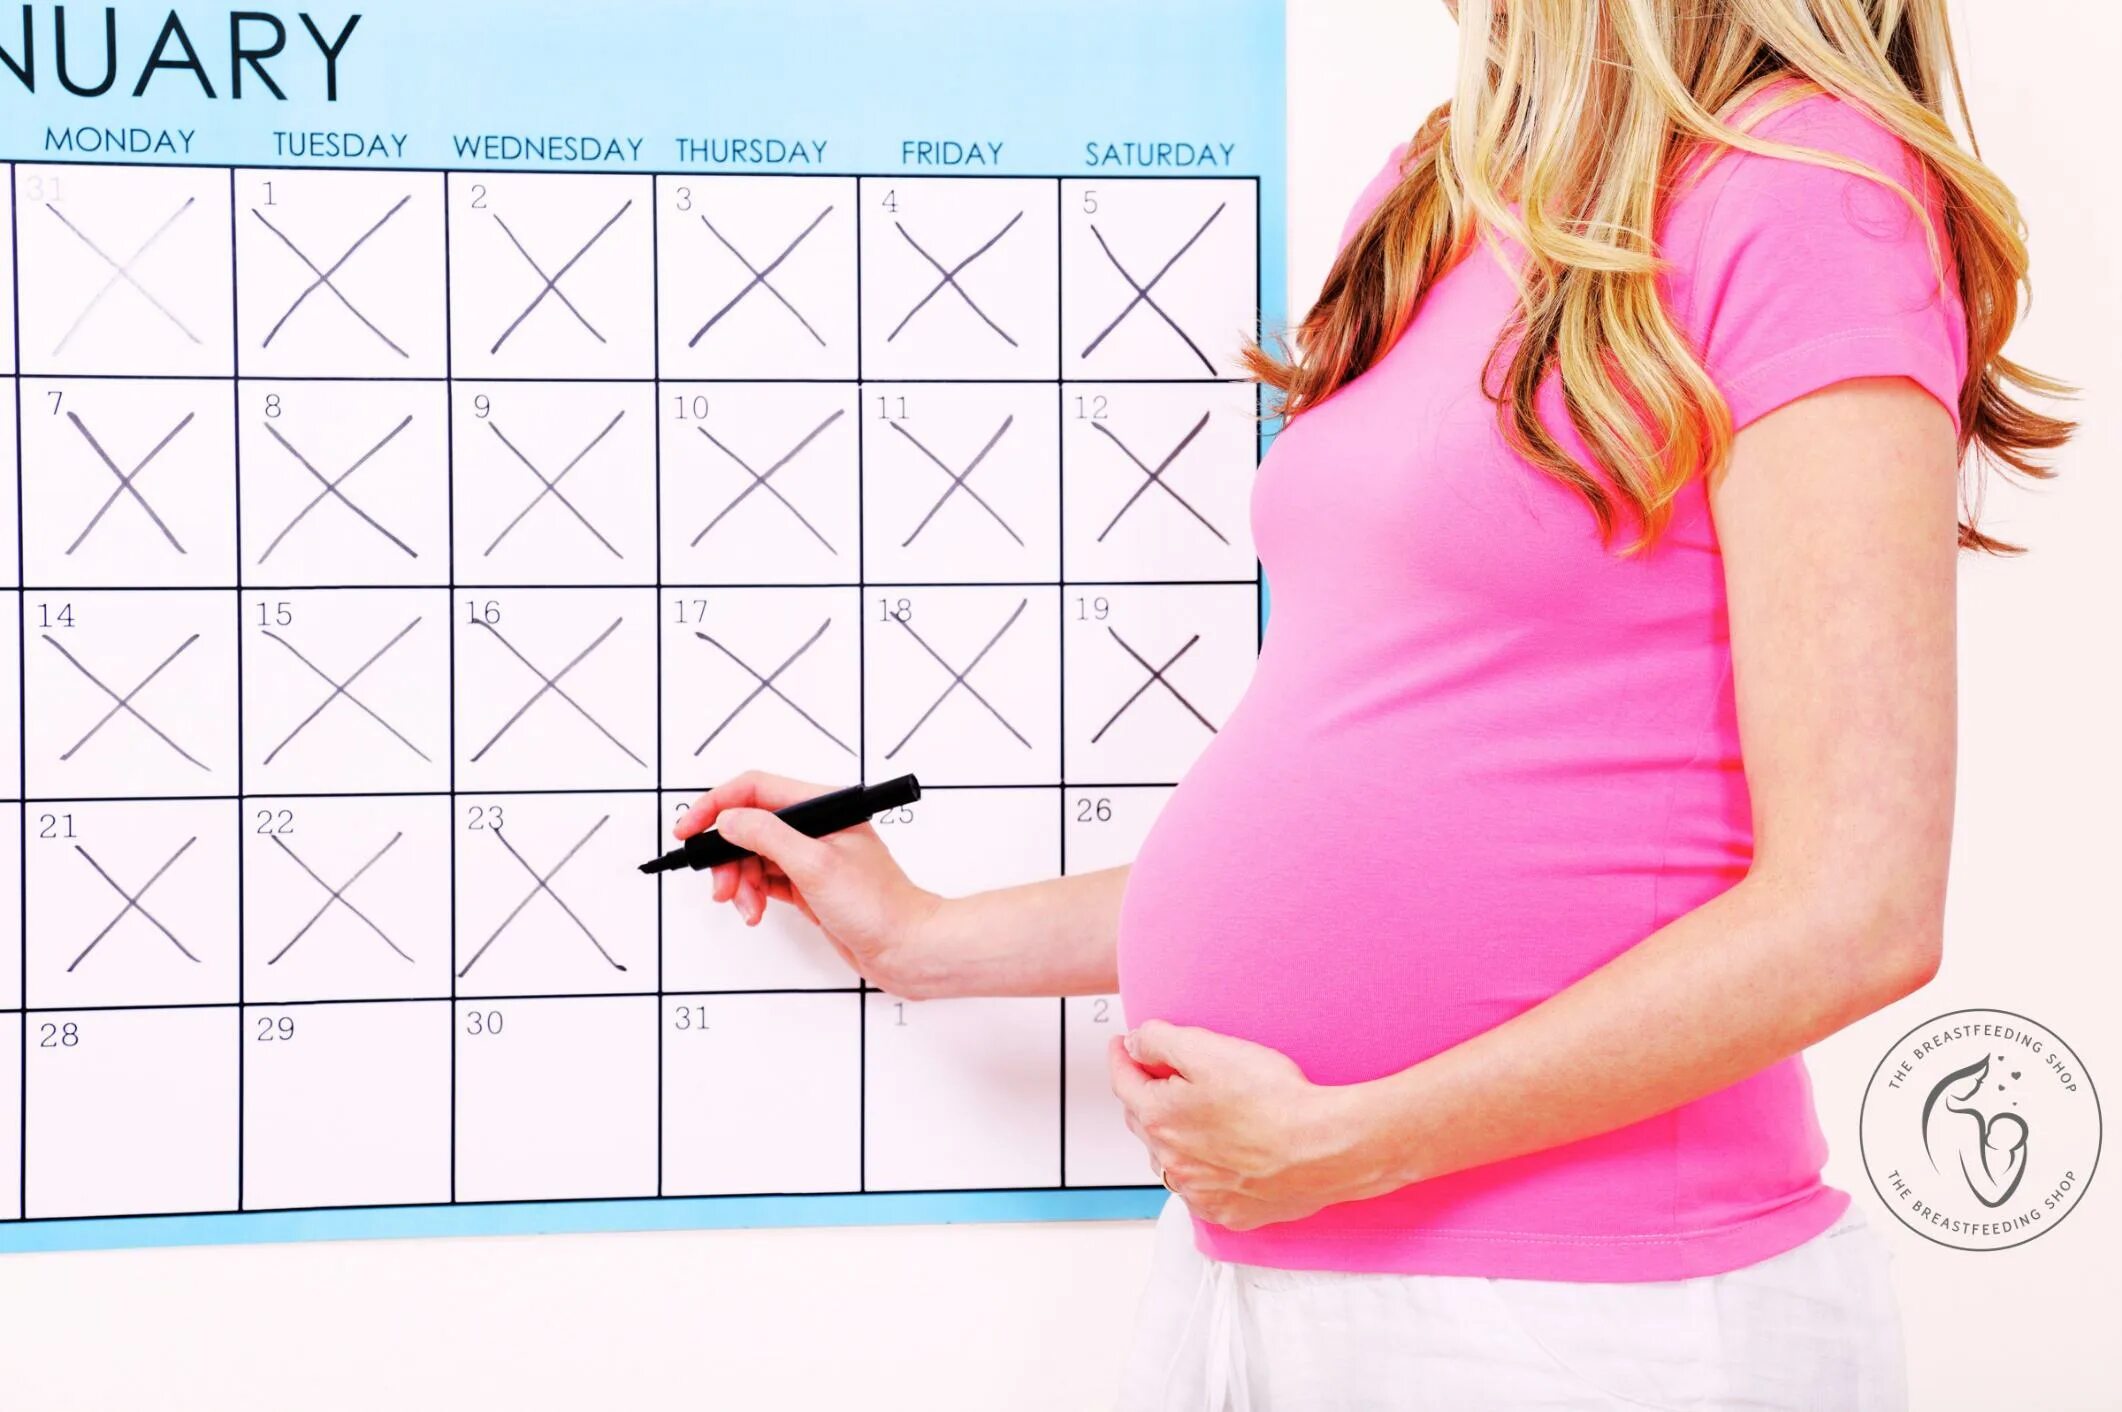 Калькулятор акушерских недель. Срок беременности. Календарь беременной. Акушерский калькулятор беременности. Календарь для беременных рисунки.